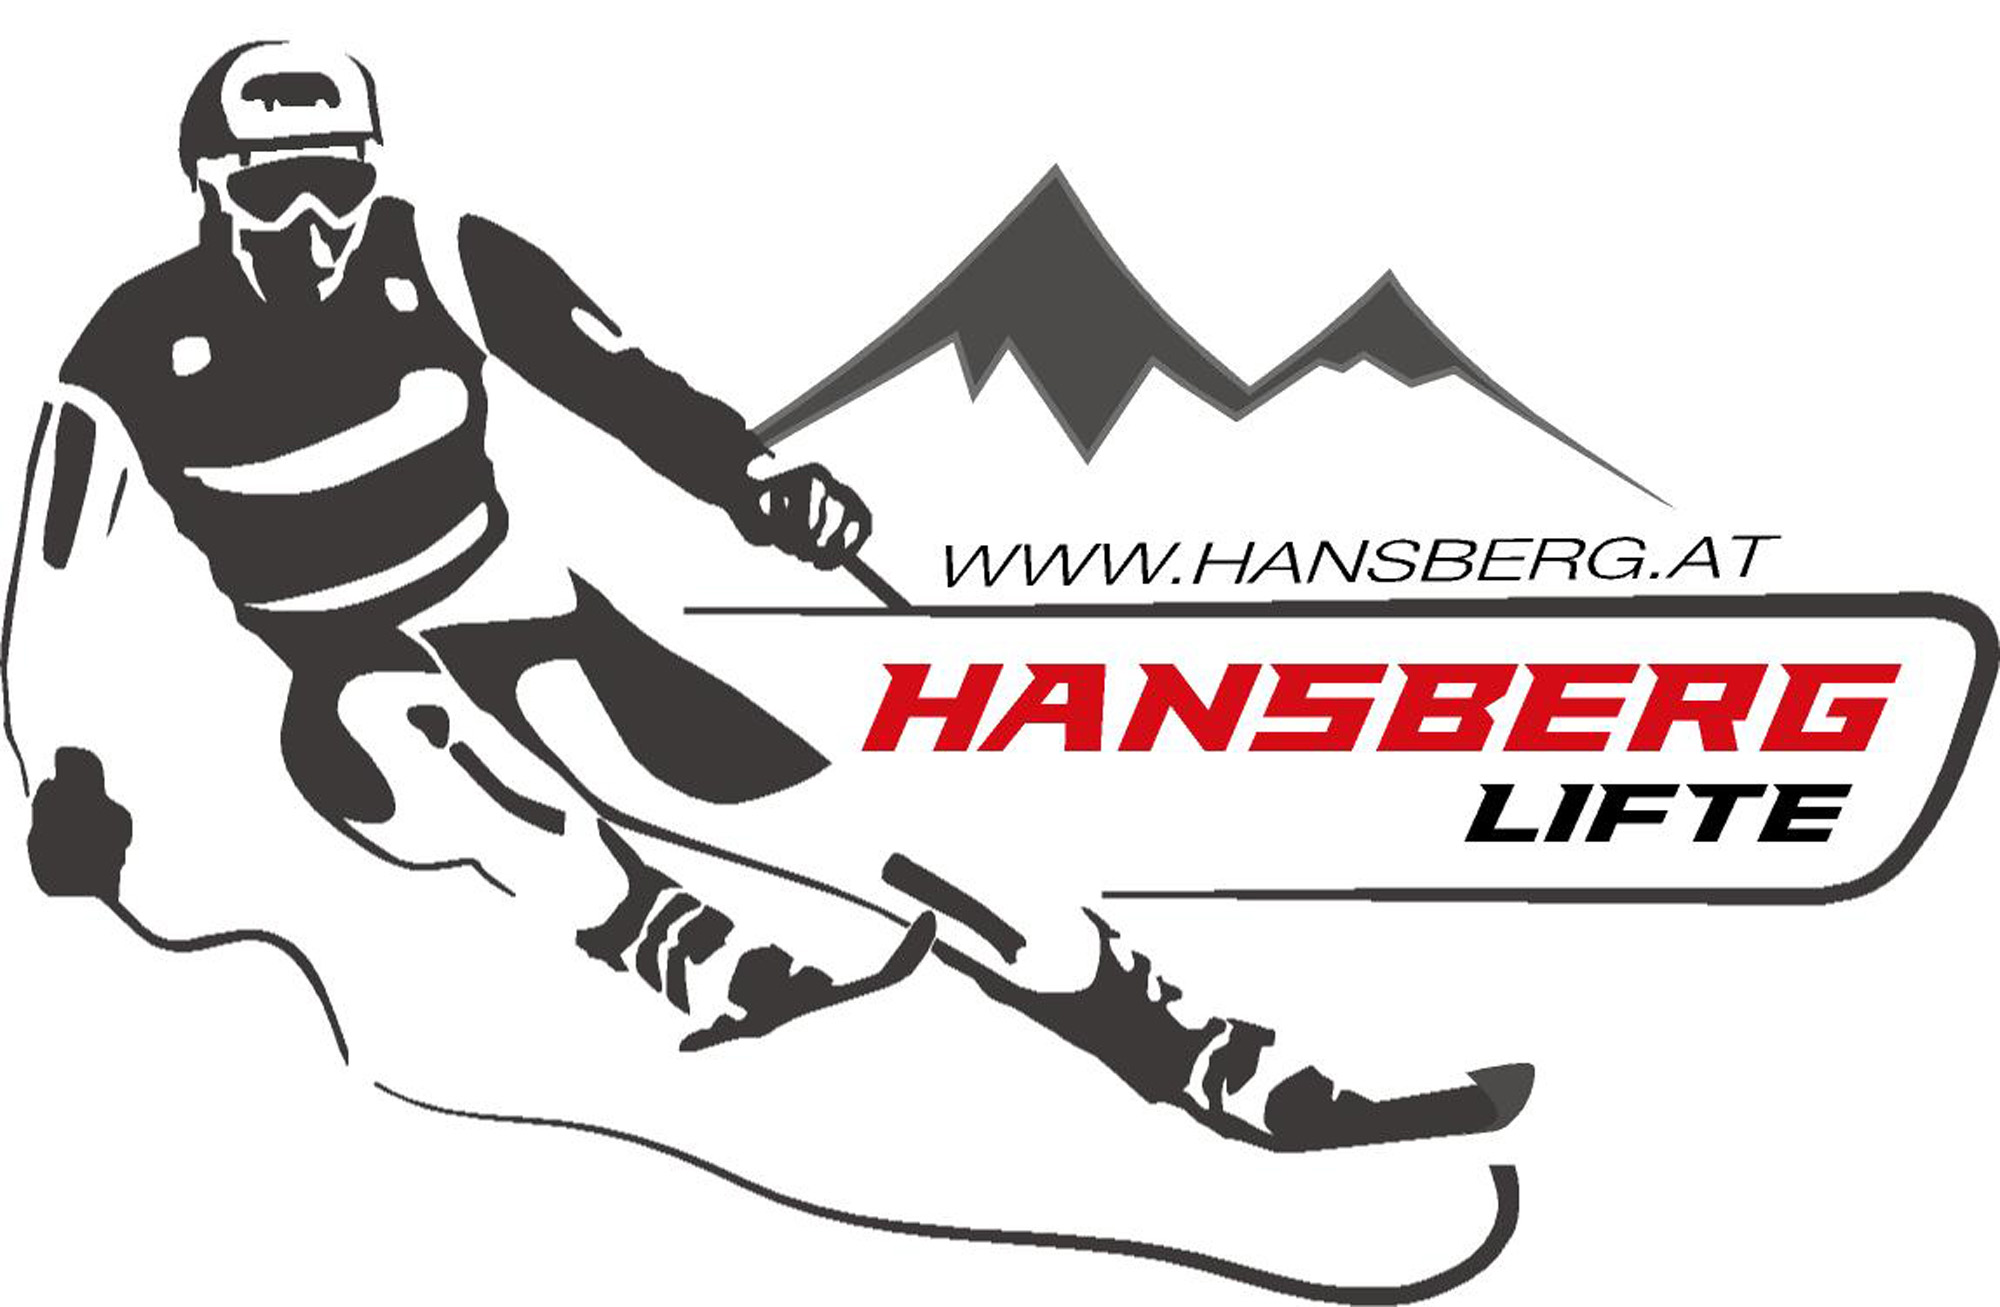 Hansberg-Lifte